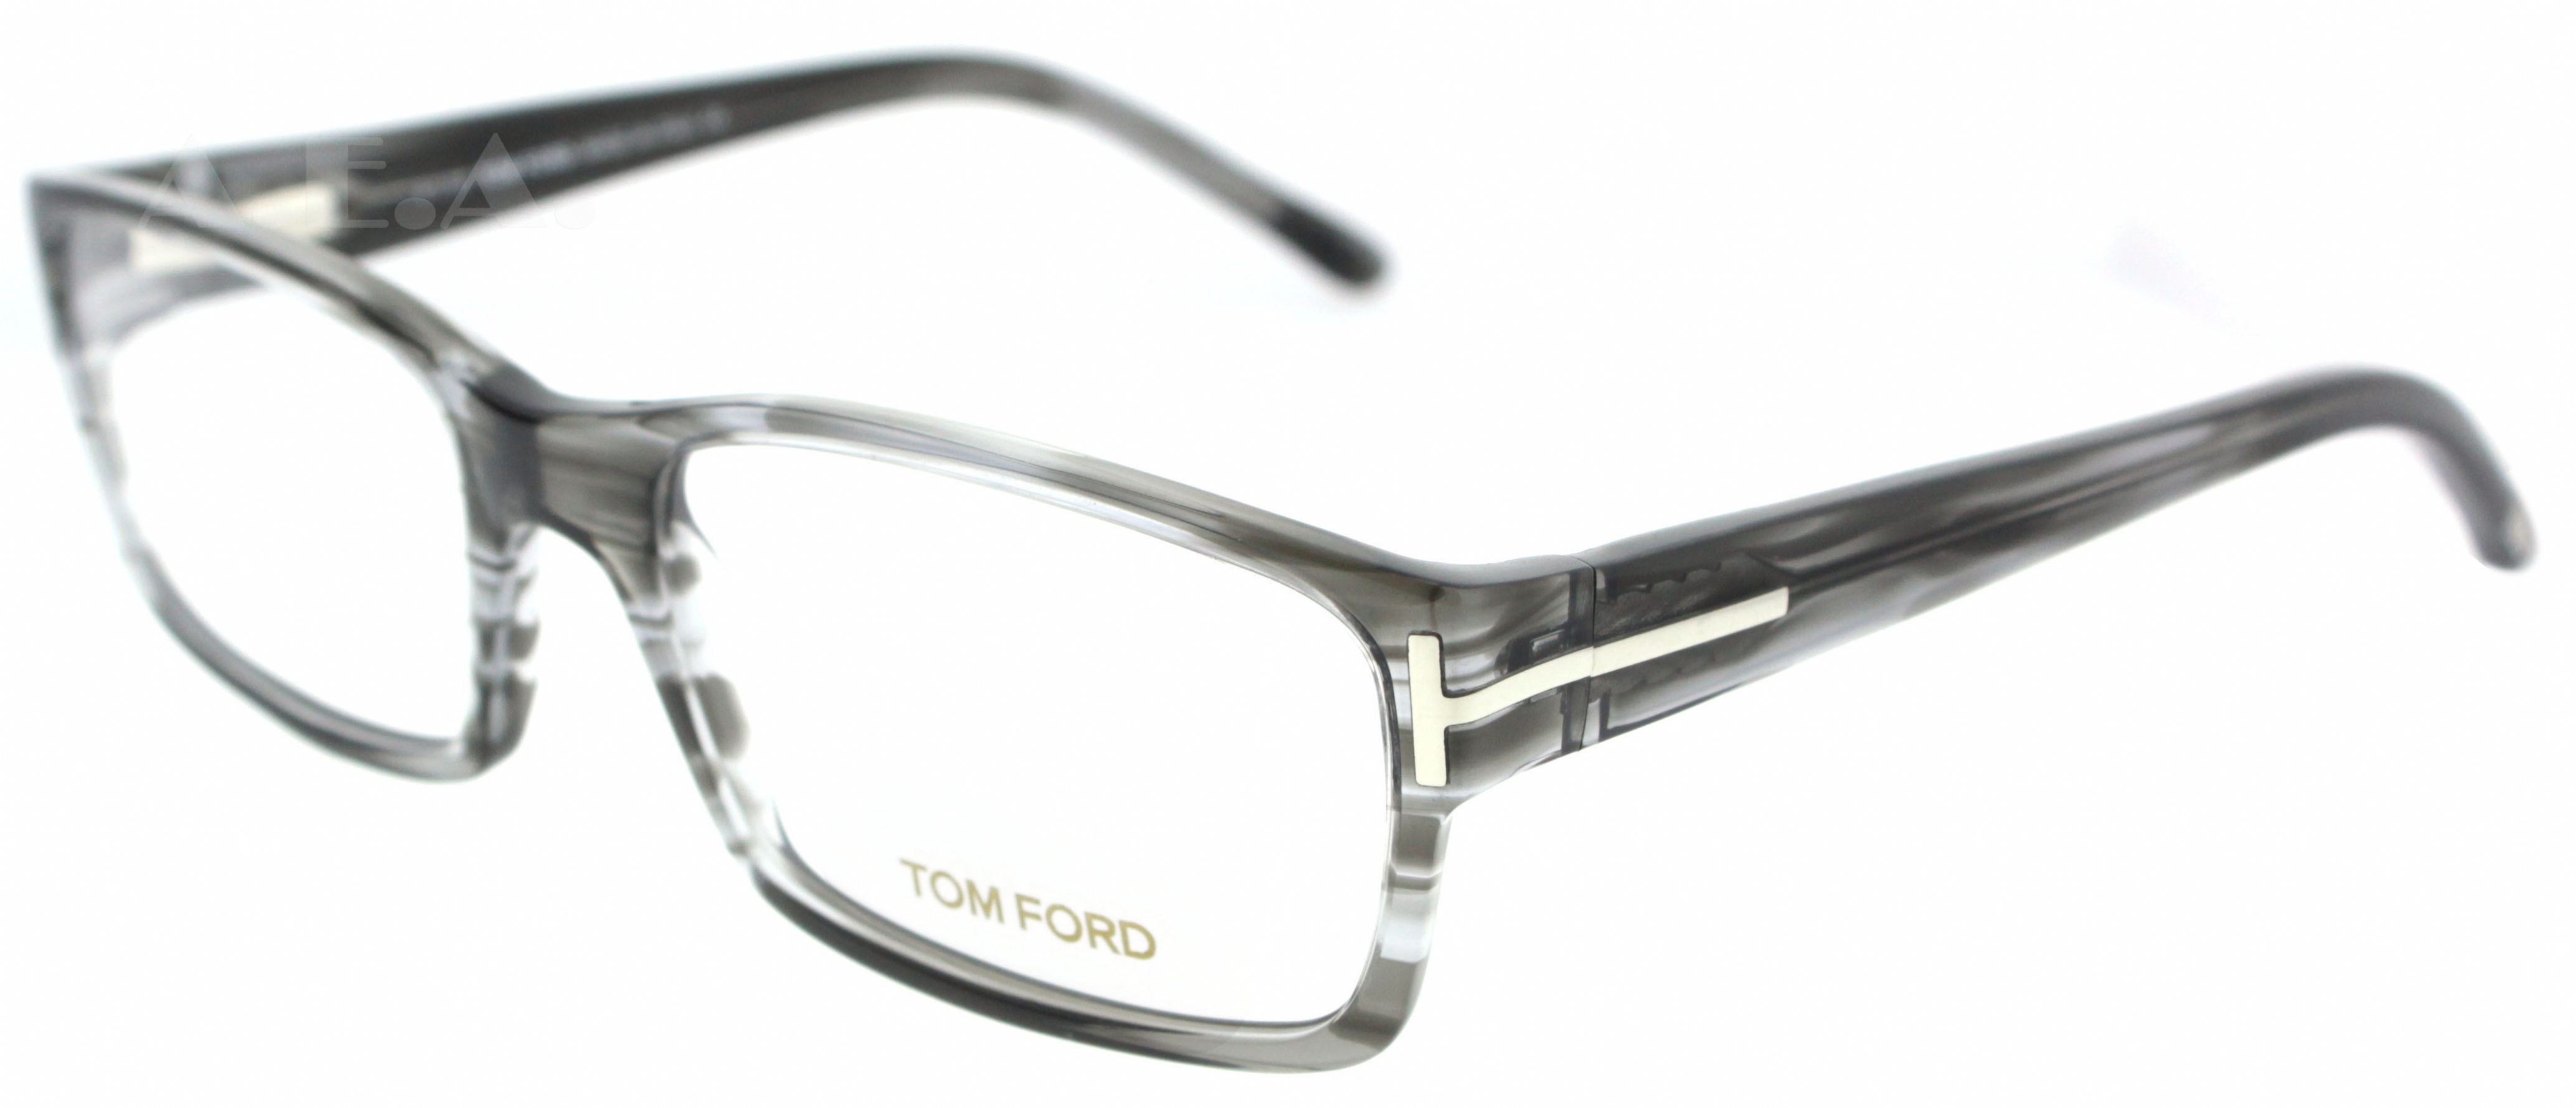 TOM FORD 5013 020